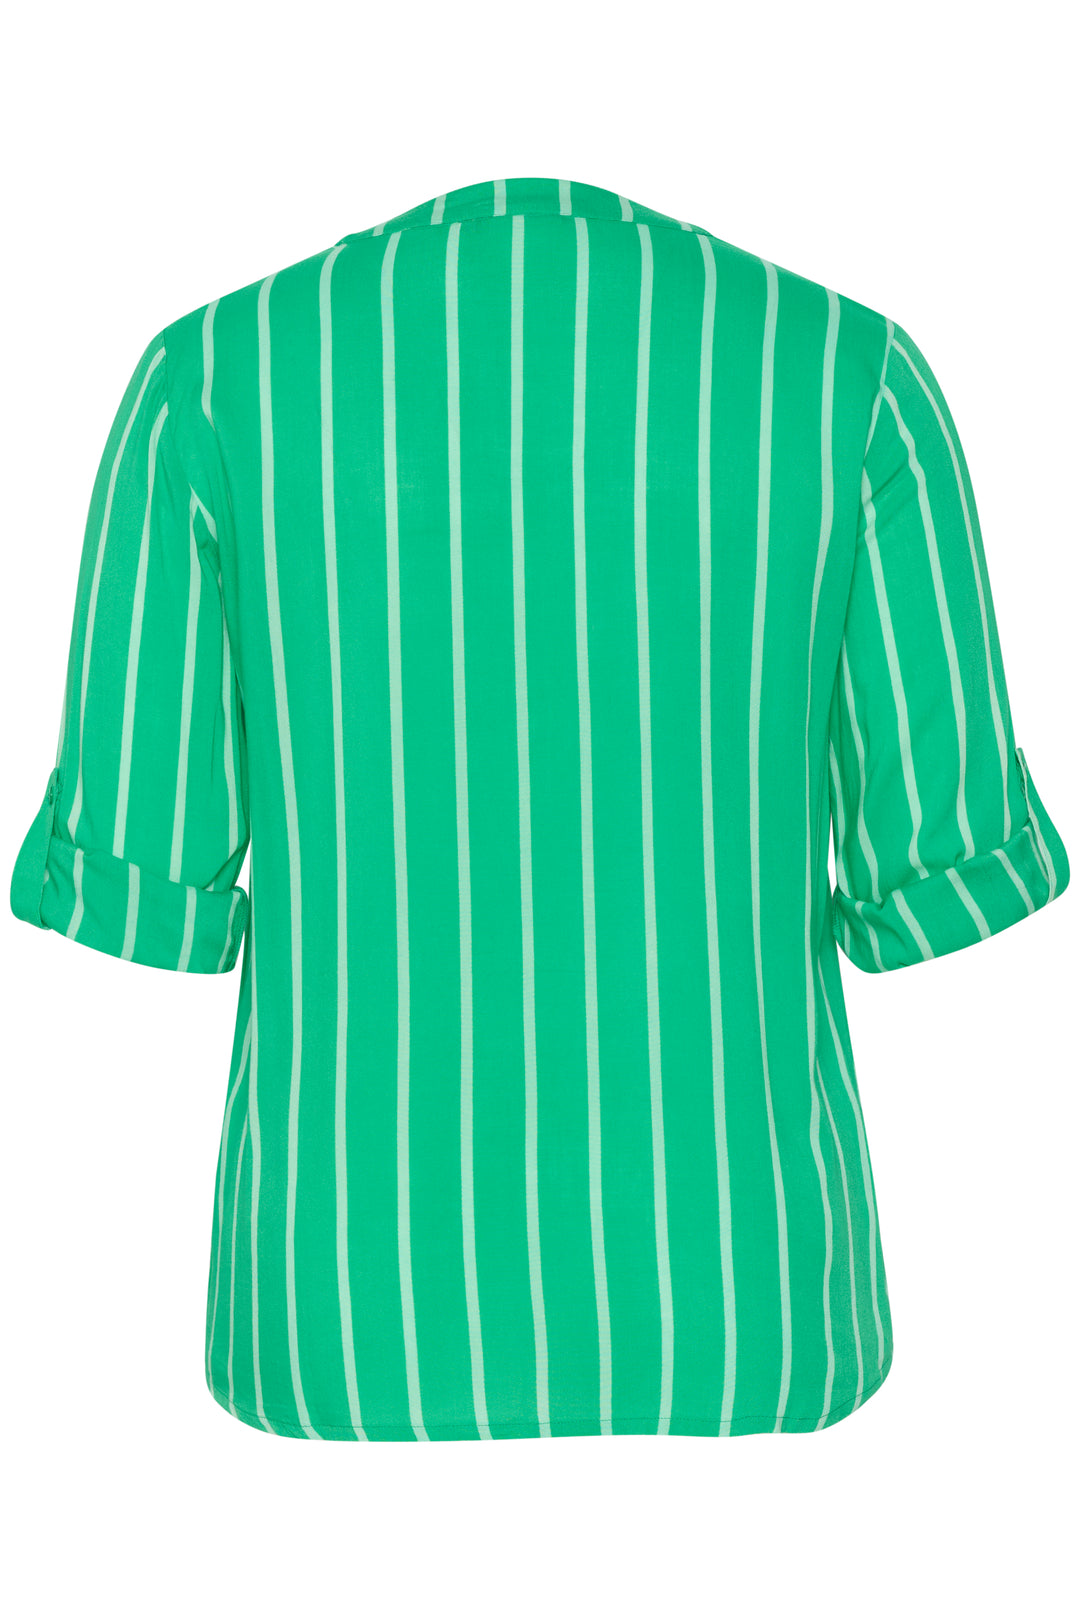 blouse met fijne strepen print - kaffe curve - - grote maten - dameskleding - kledingwinkel - herent - leuven